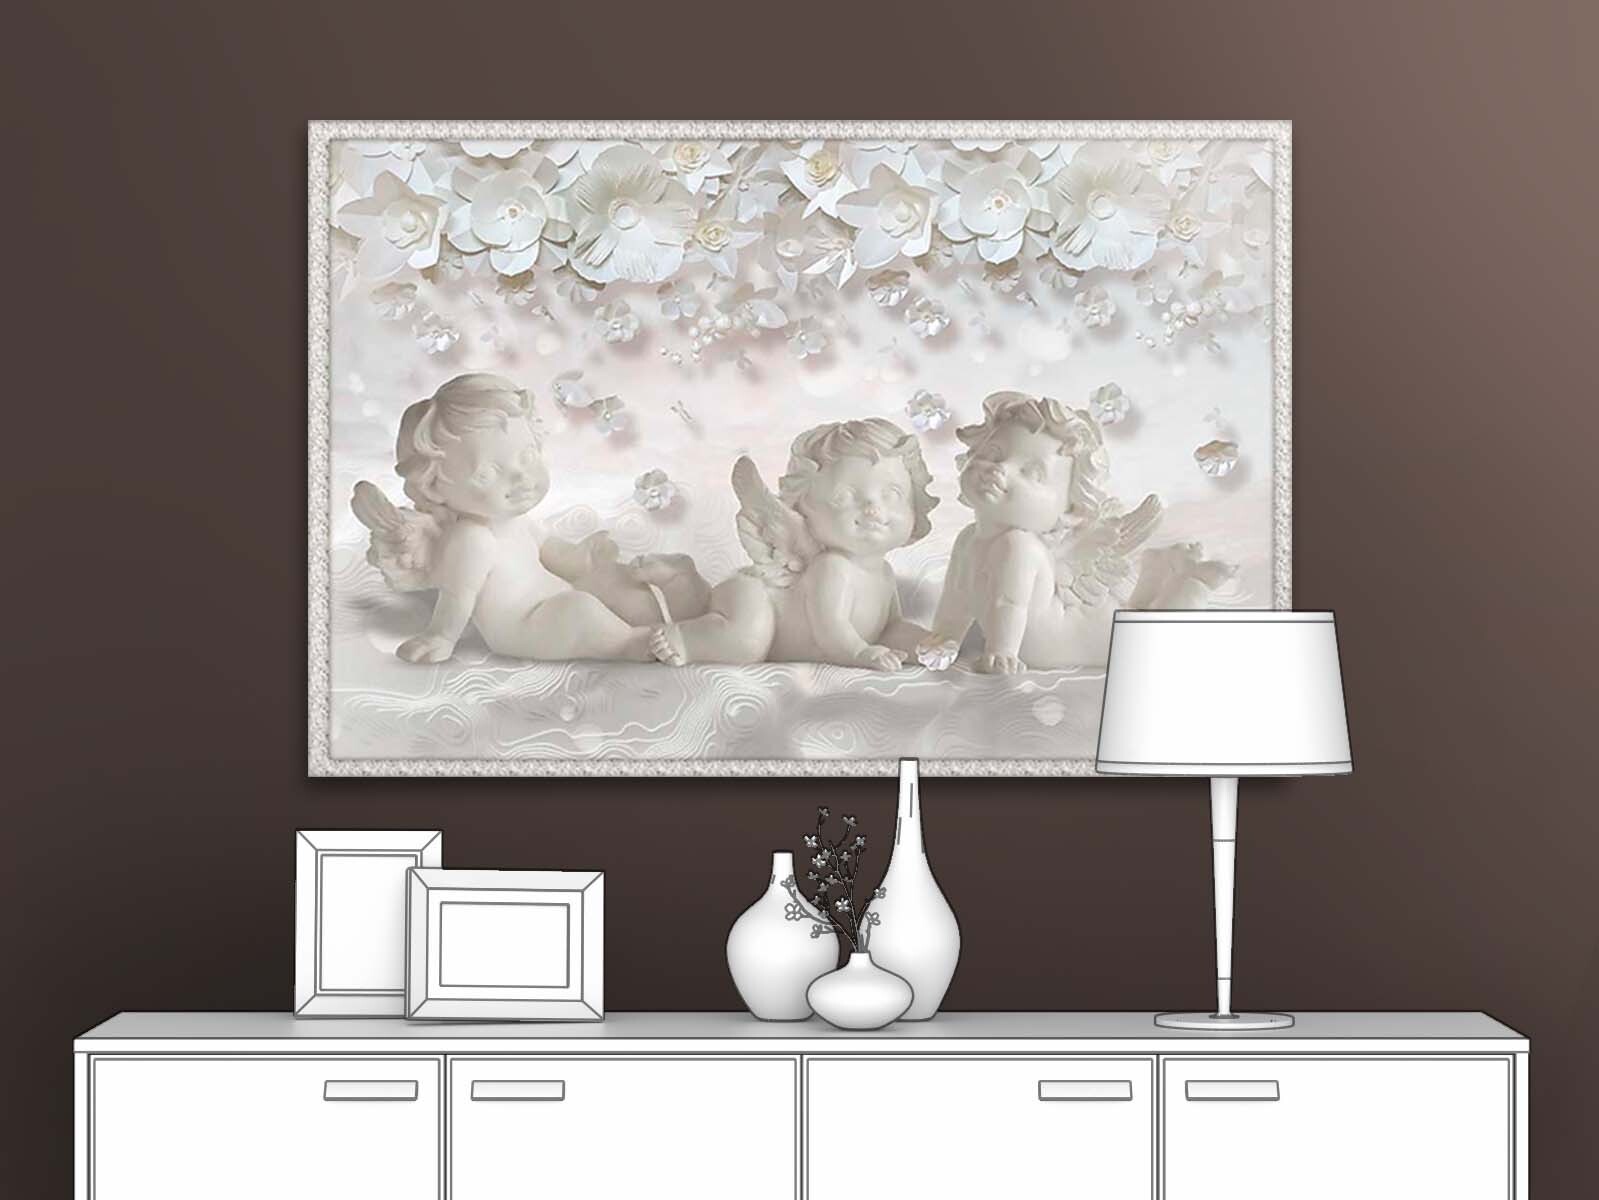 

Картина на стену для интерьера ПЕРВОЕ АТЕЛЬЕ "Милые ангелочки" 90х60 см, Милые ангелочки